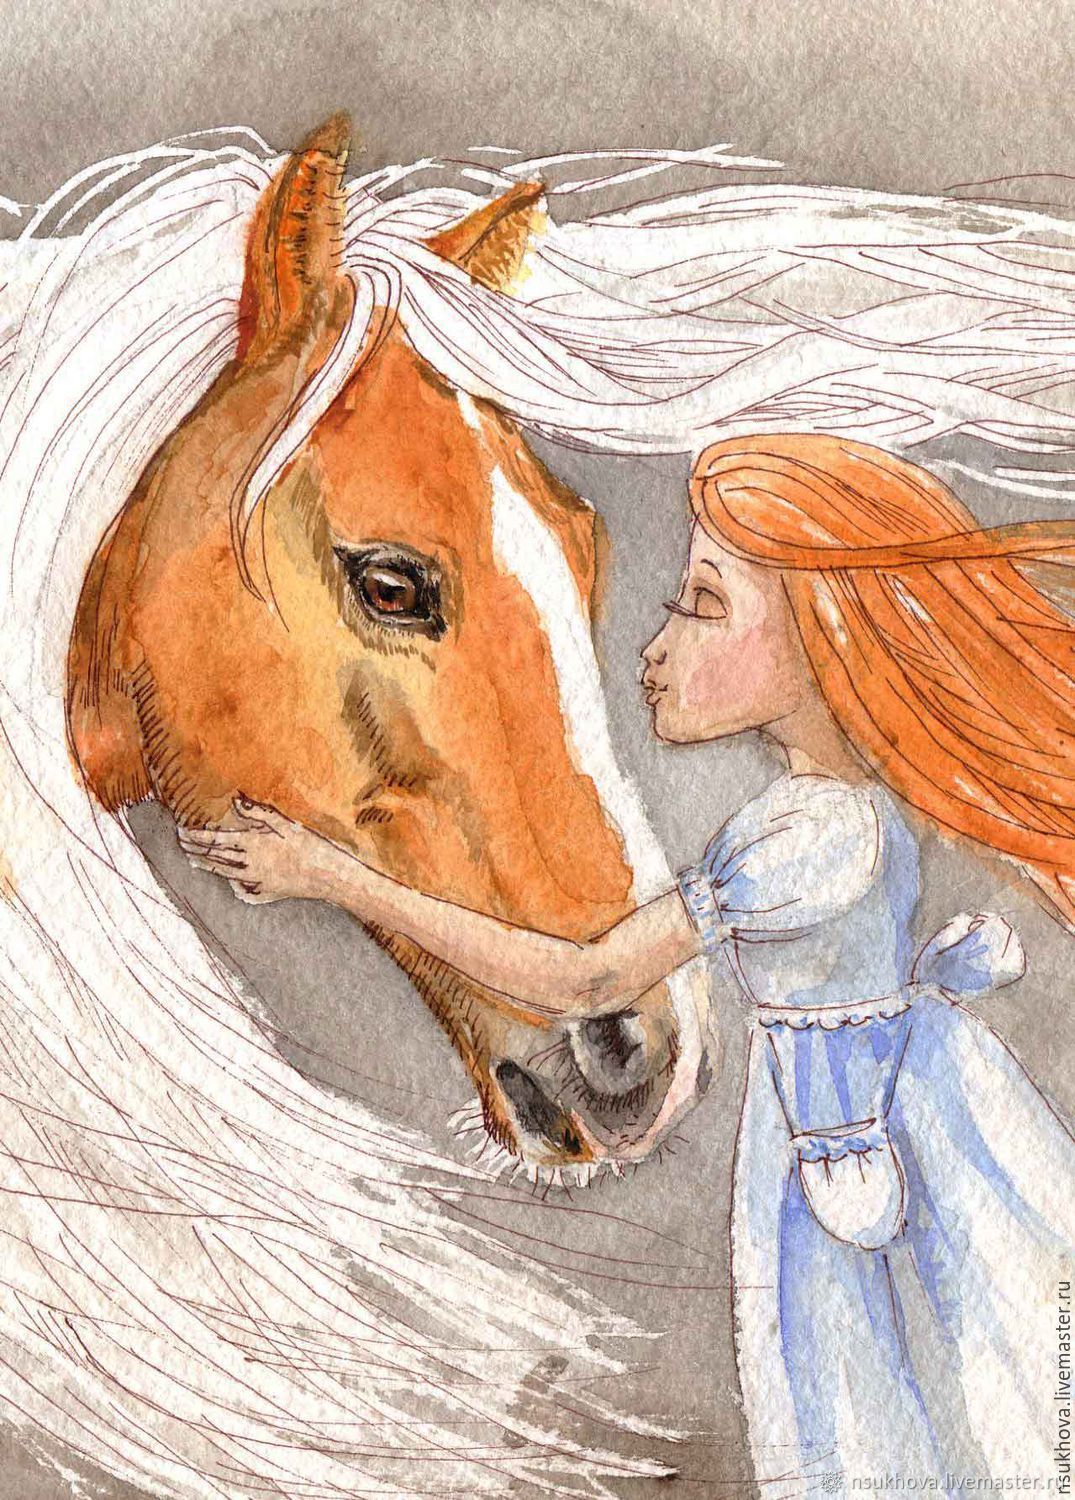 18341 Серов 80-е принц иллюстрация к восточной сказке всадник кавалерист конь сбруя живопись чистая